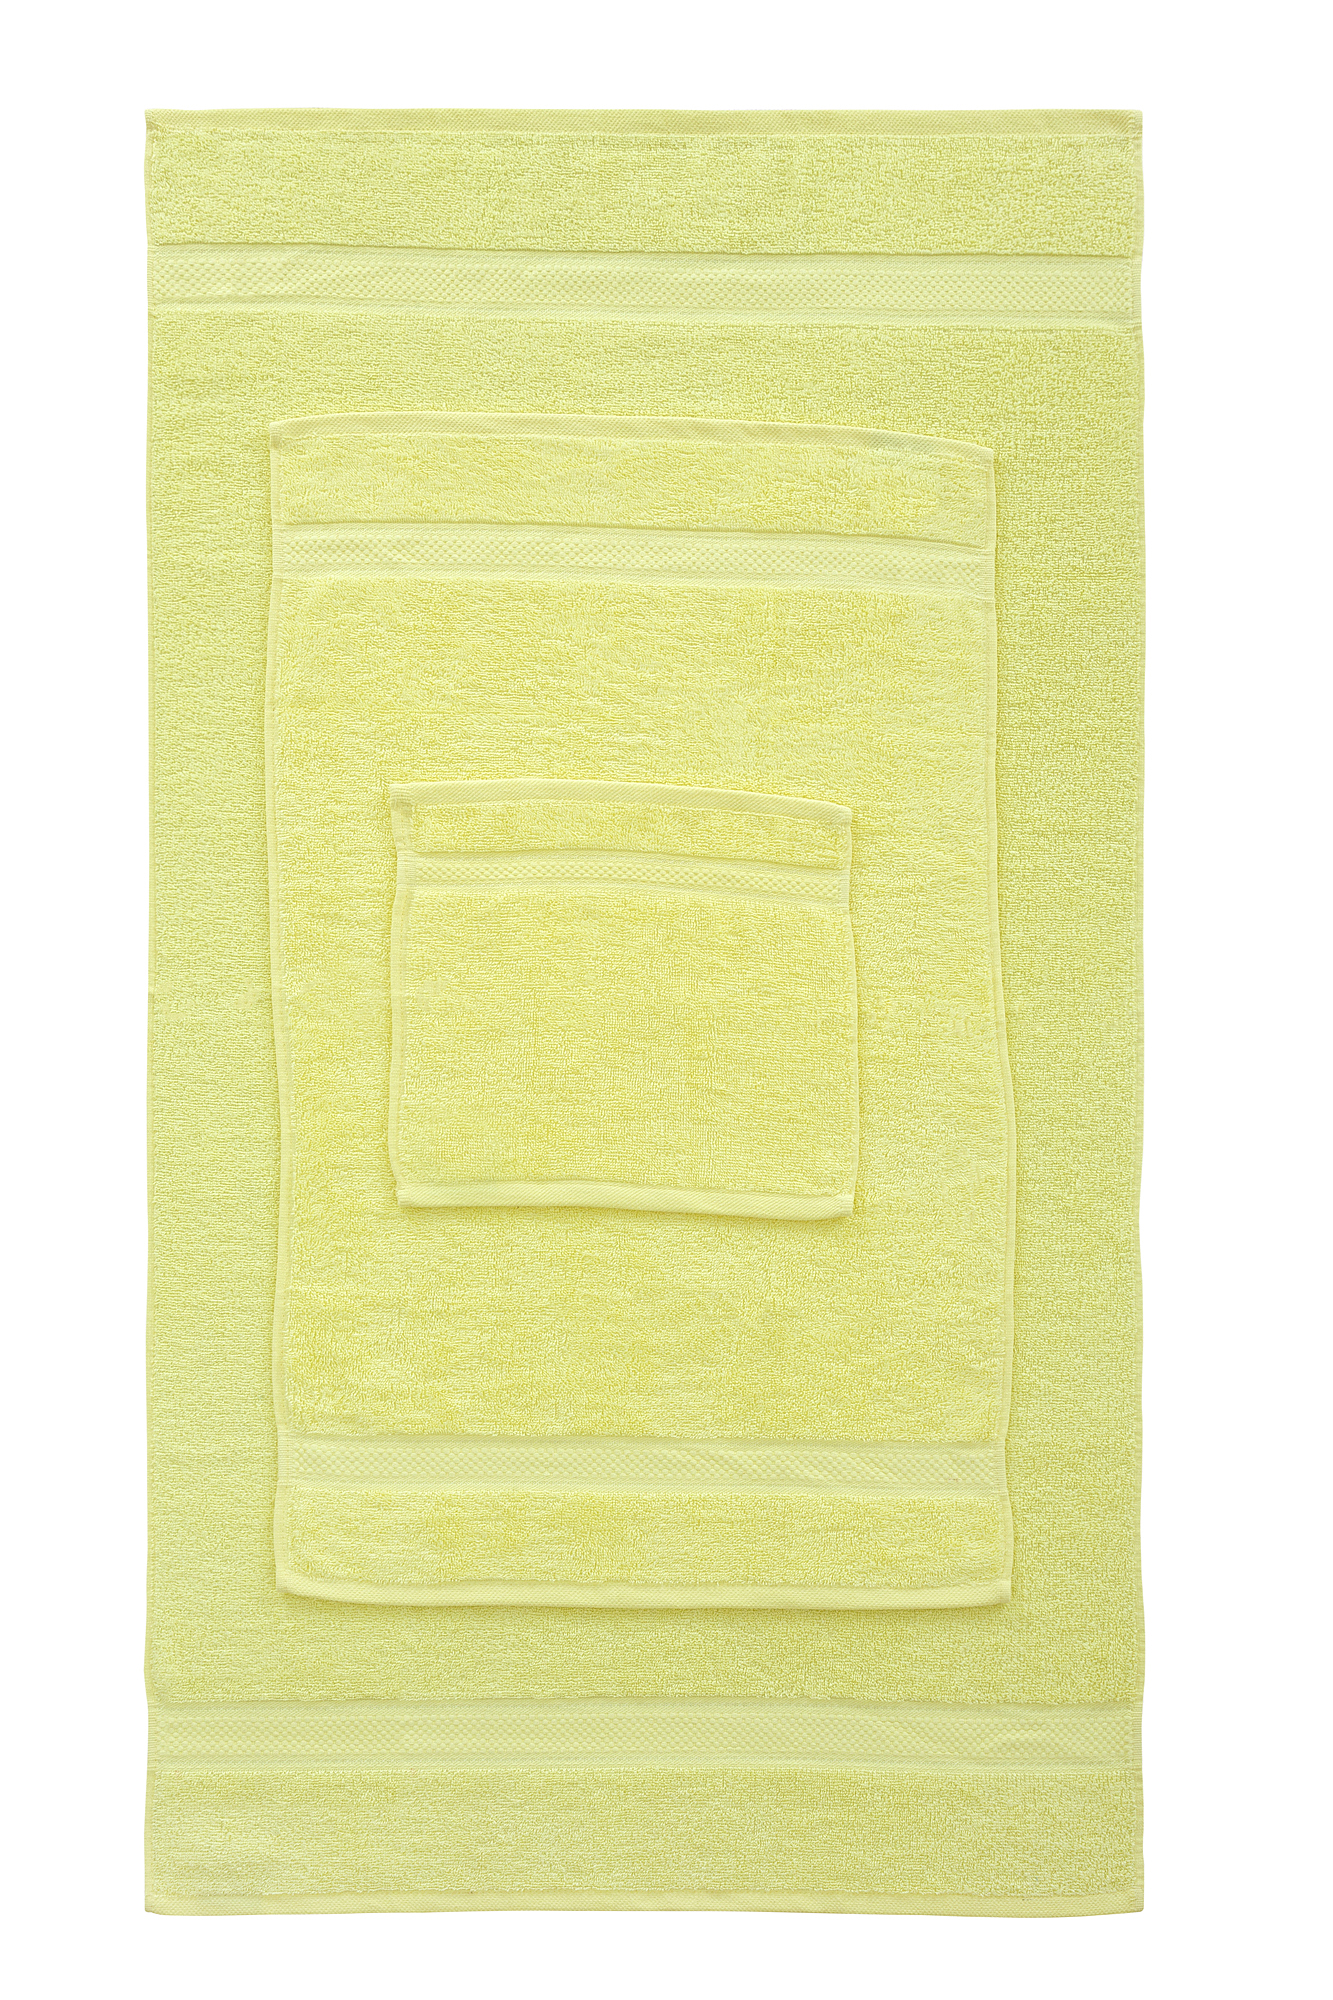 10pcs Lemon Plain Bale Set Towel